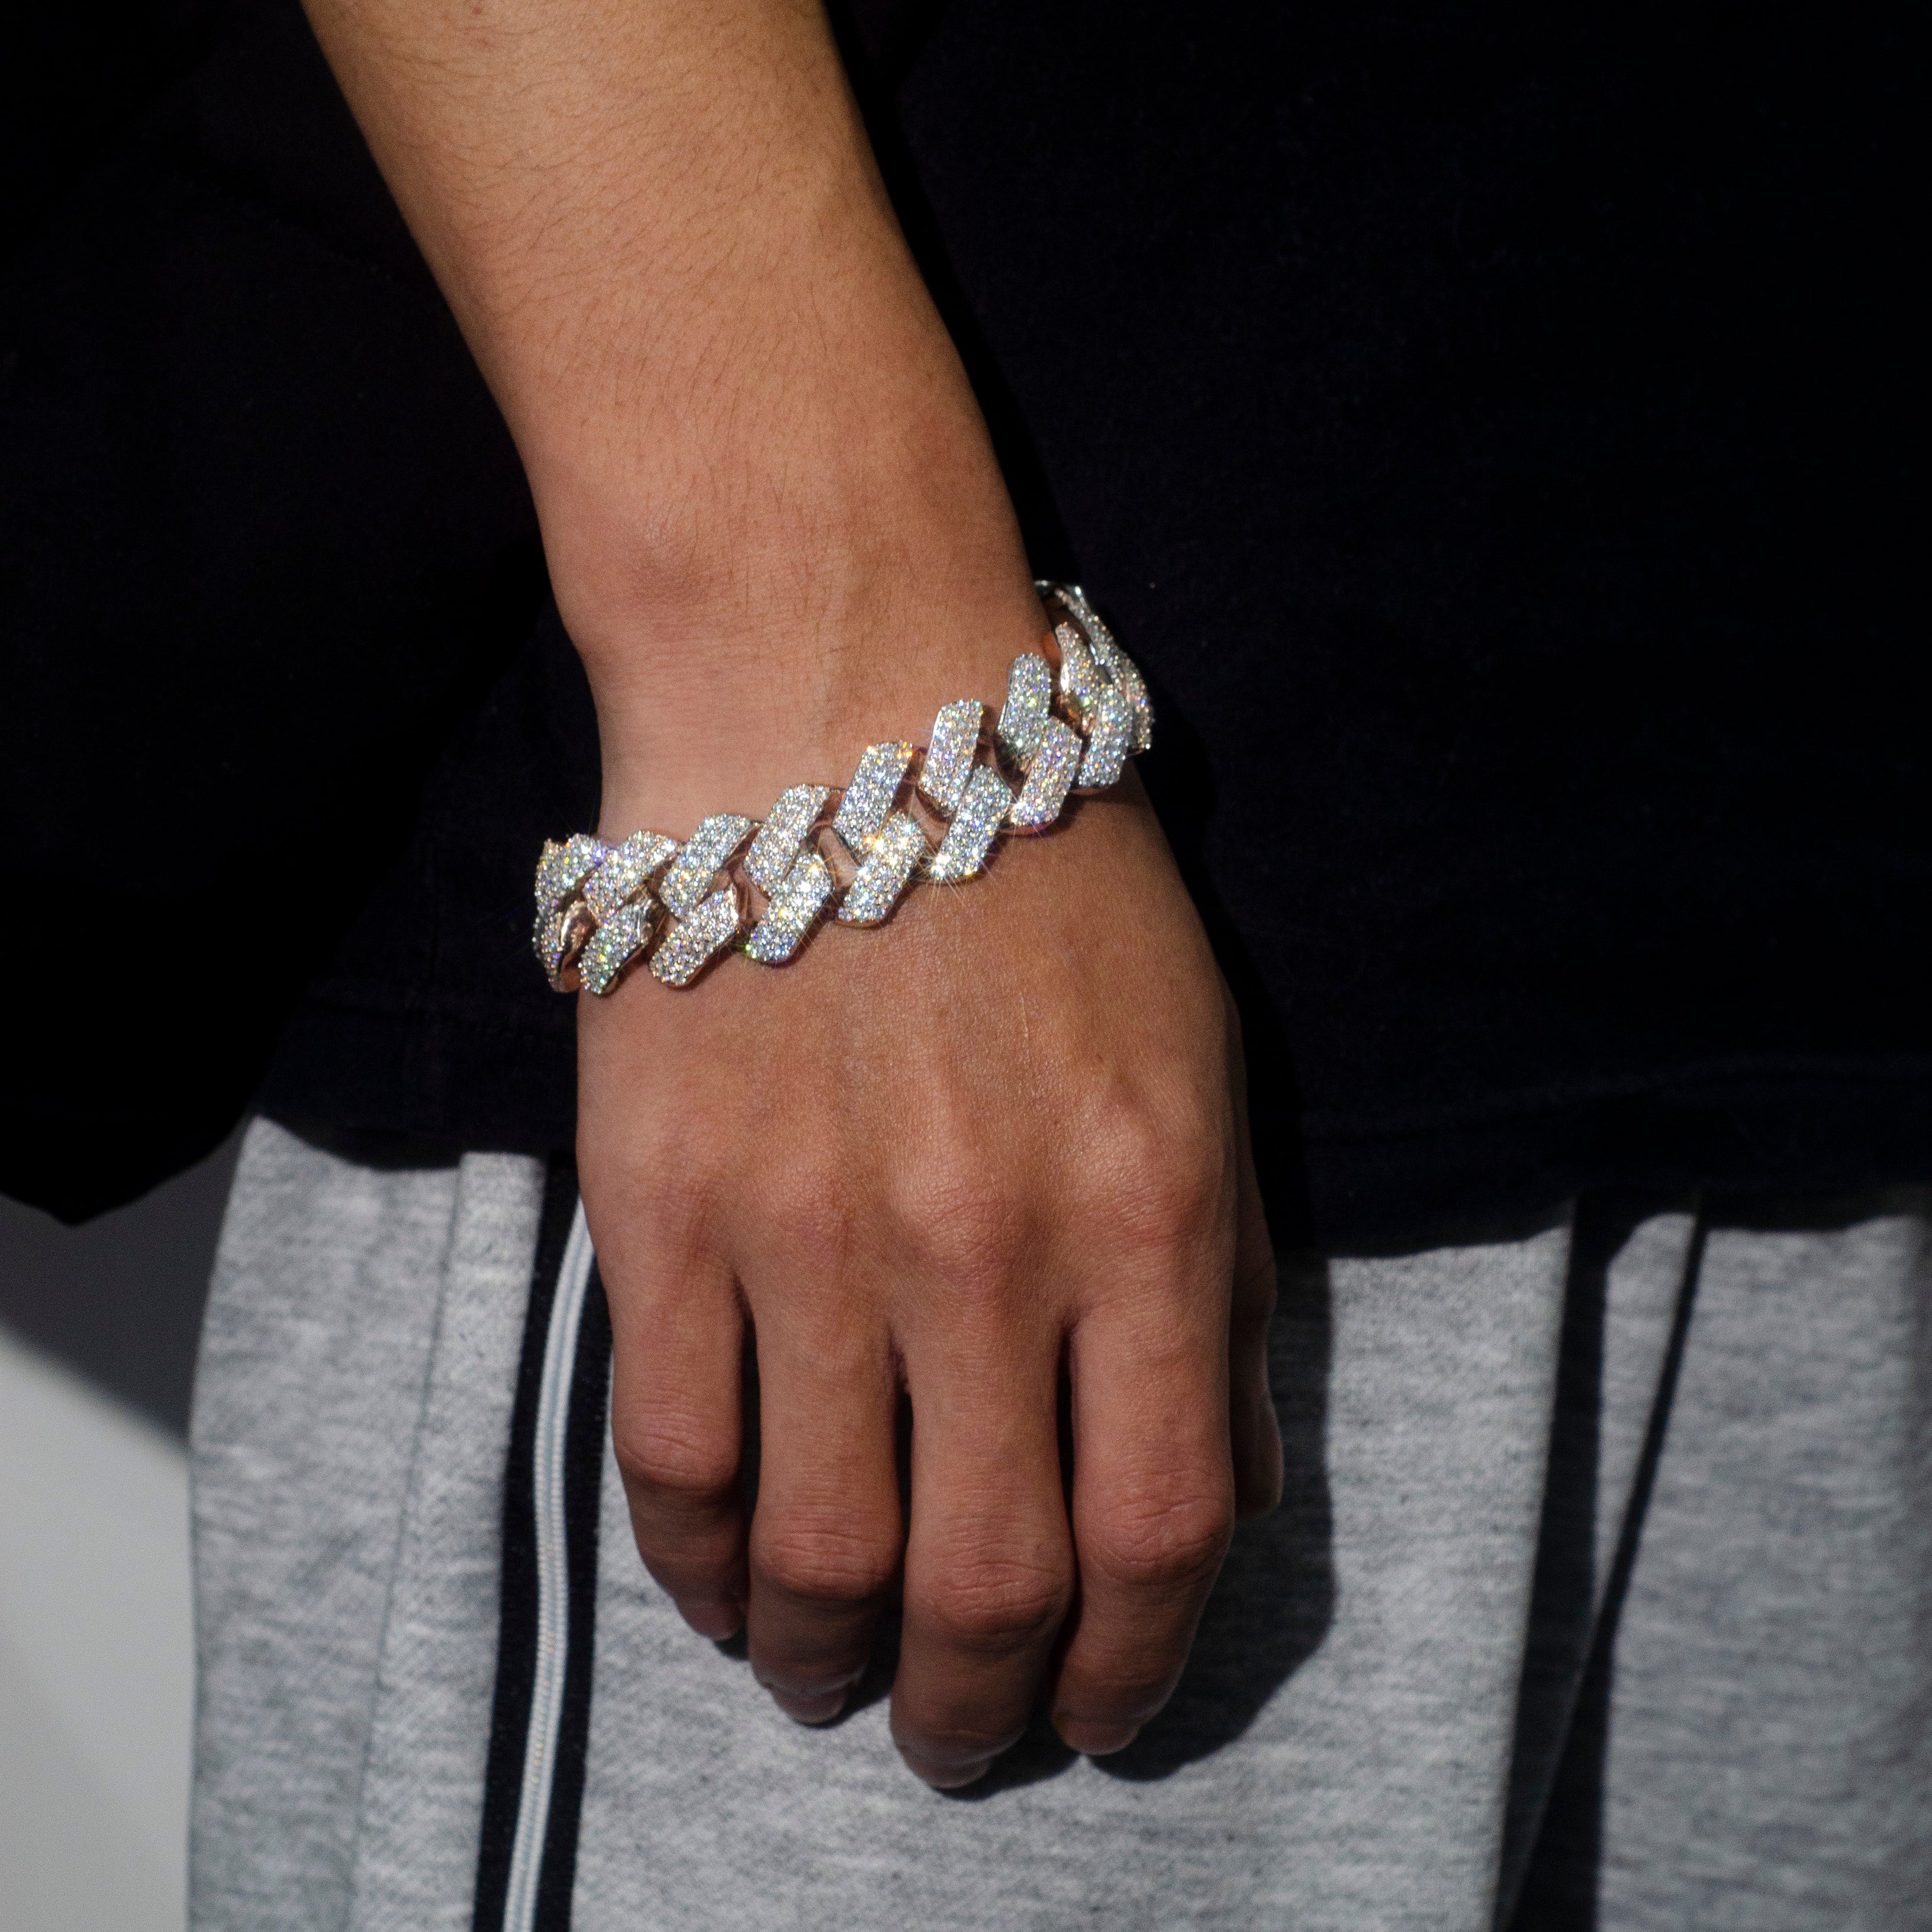 Men's Silver Bracelet - Cuban Silver Bracelets For Men | By Twistedpendant